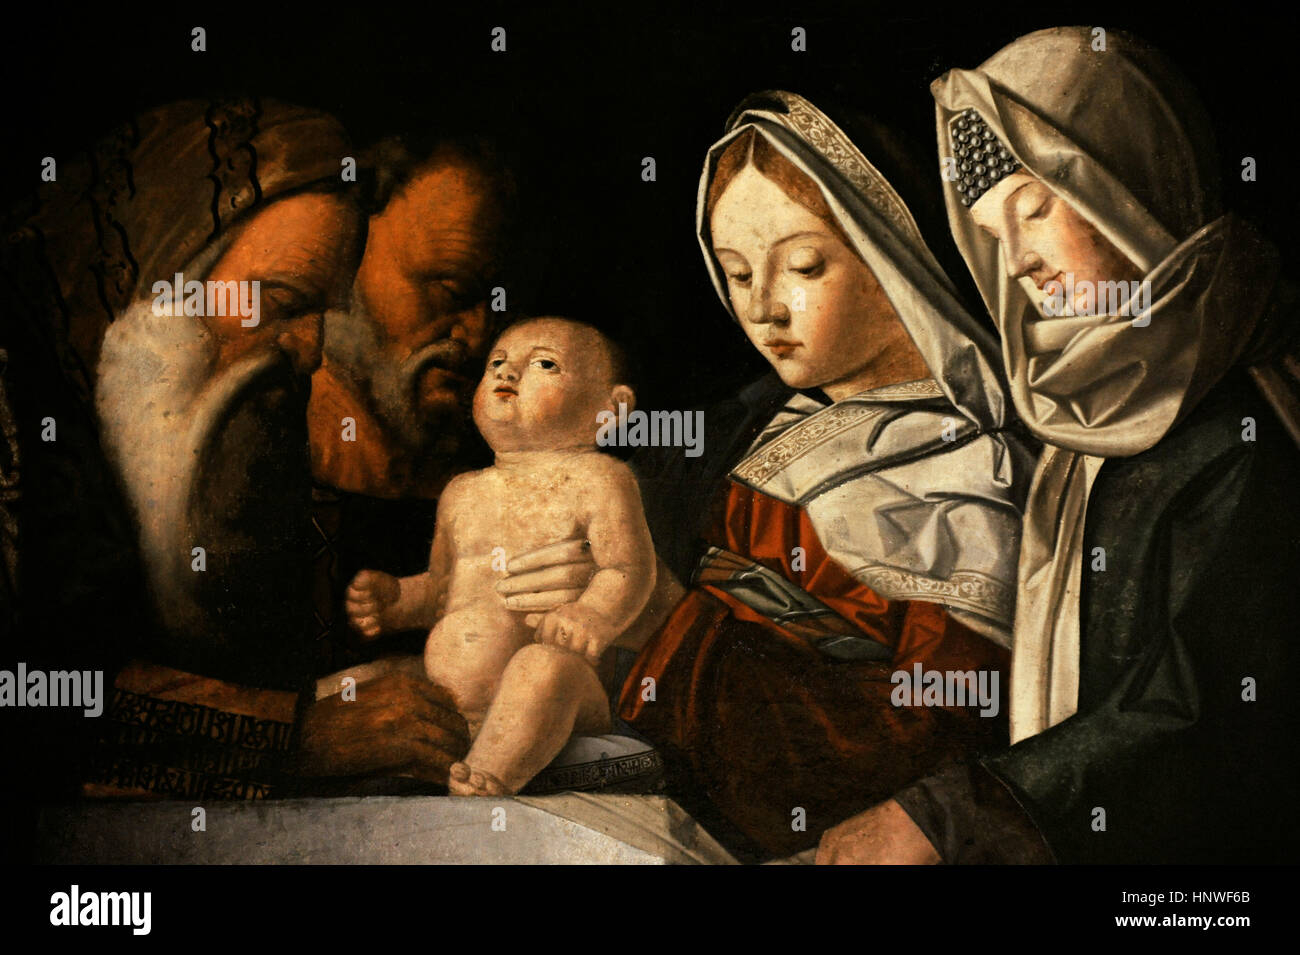 Giovanni Bellini (1432-1516). Pintor italiano. La circuncisión, ca. 1500. Colección de bourbon. Museo Nacional de Capodimonte. Nápoles. Italia. Foto de stock